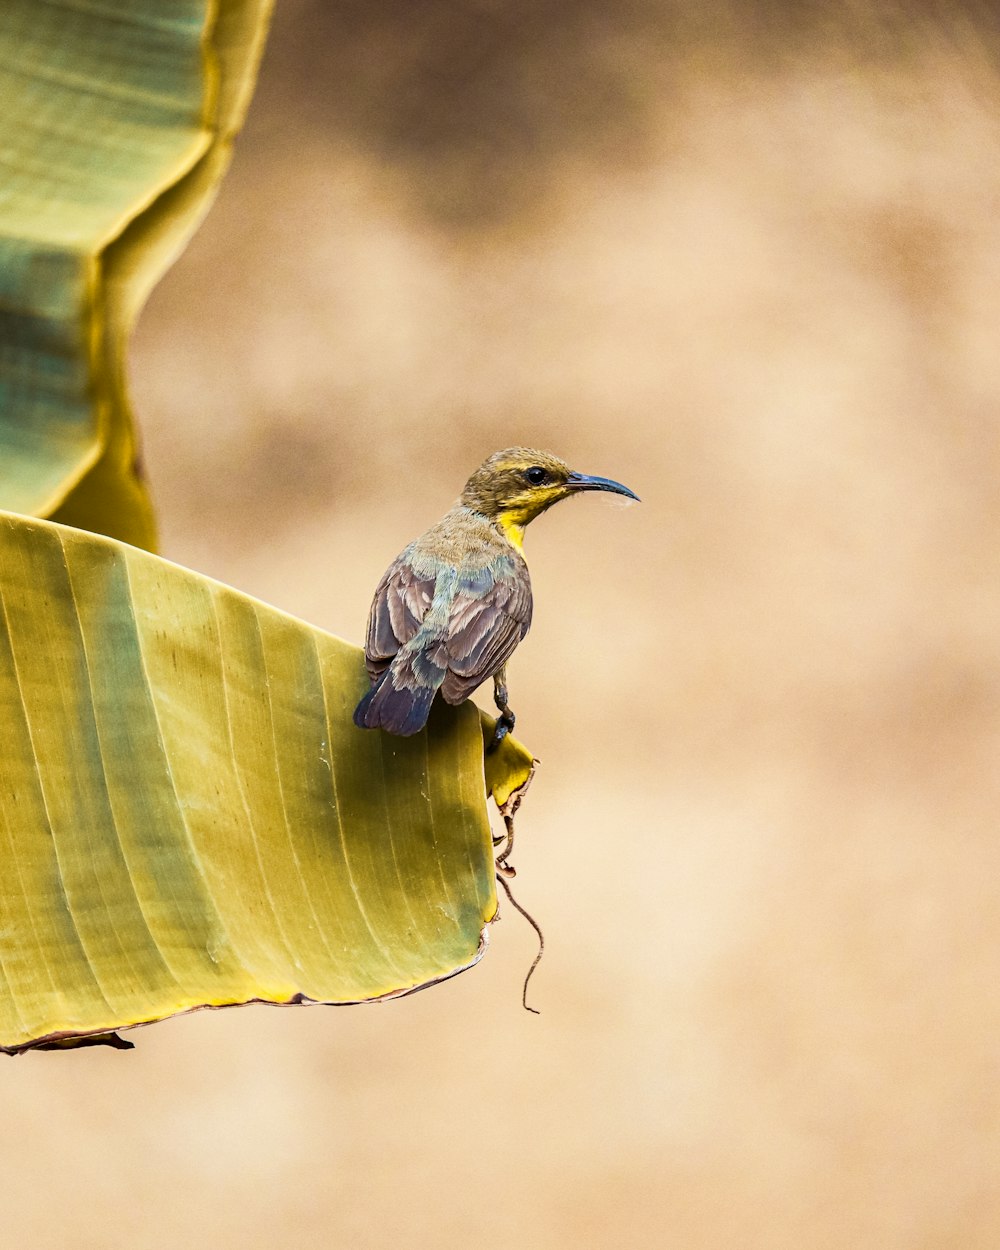 a bird perched on a leaf